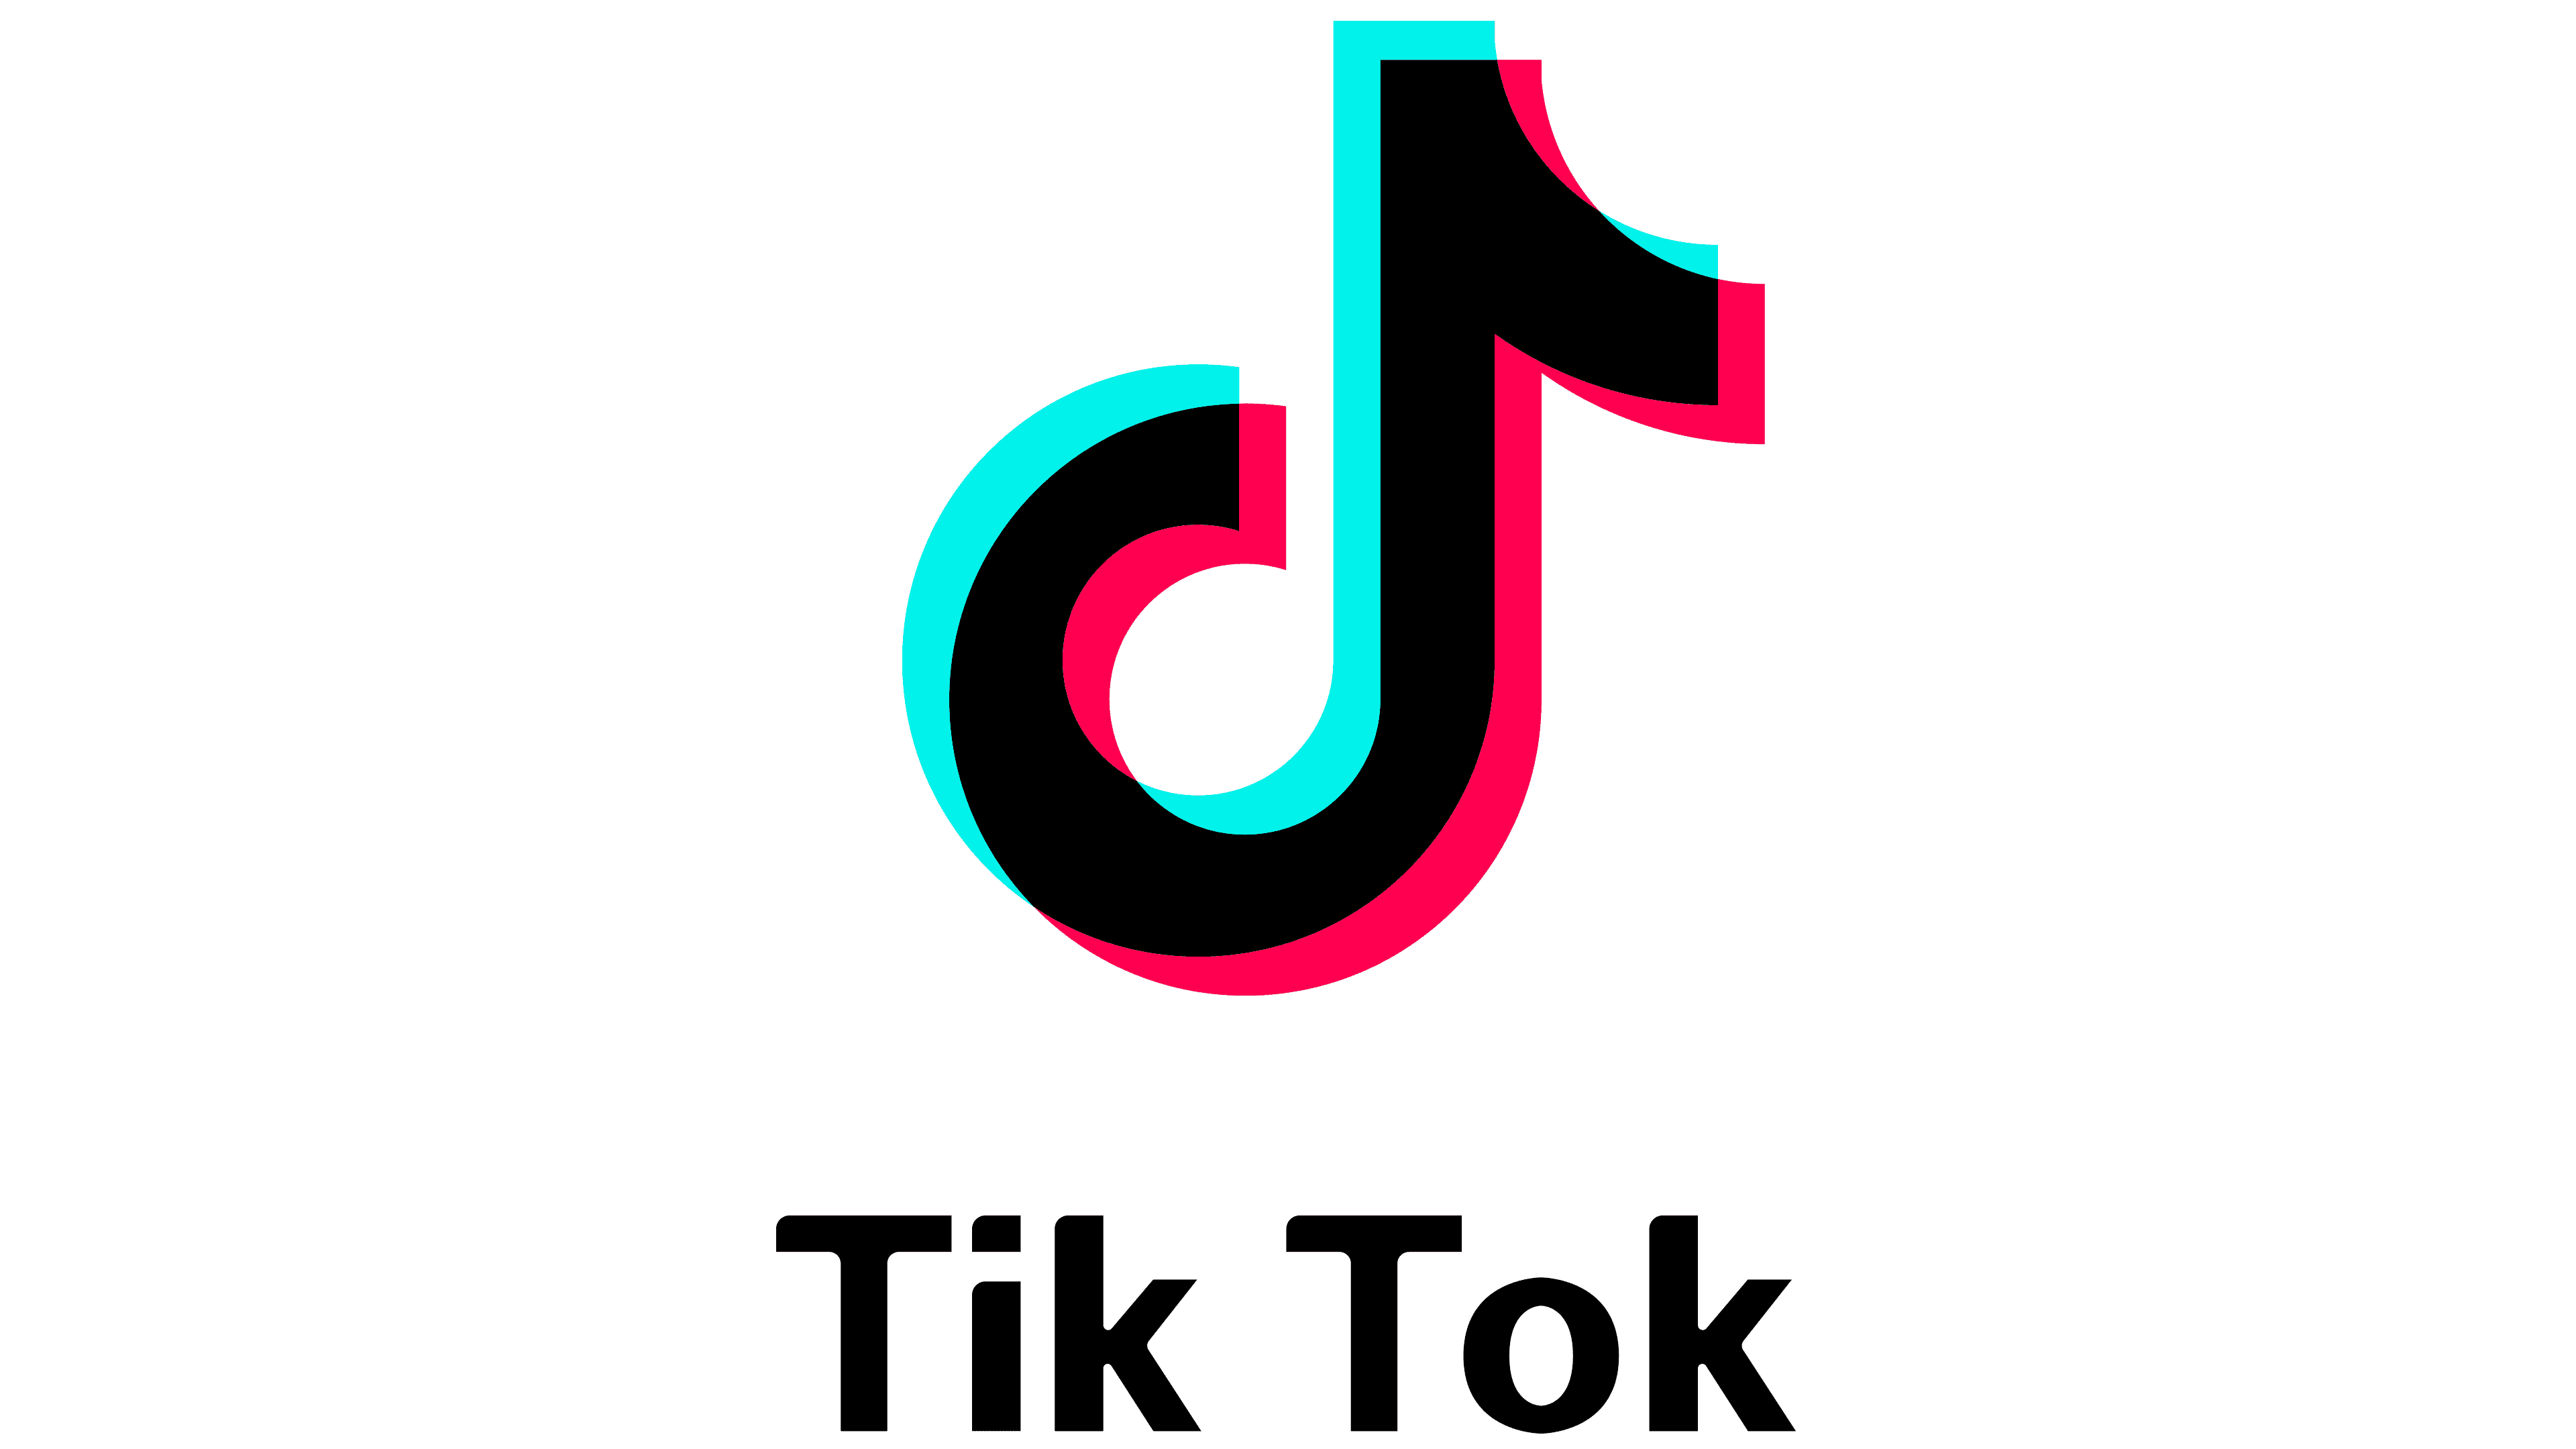 Tik Tok Logo Png Image Tiktok Logo Tik Tok Logo Youtube Logo Images